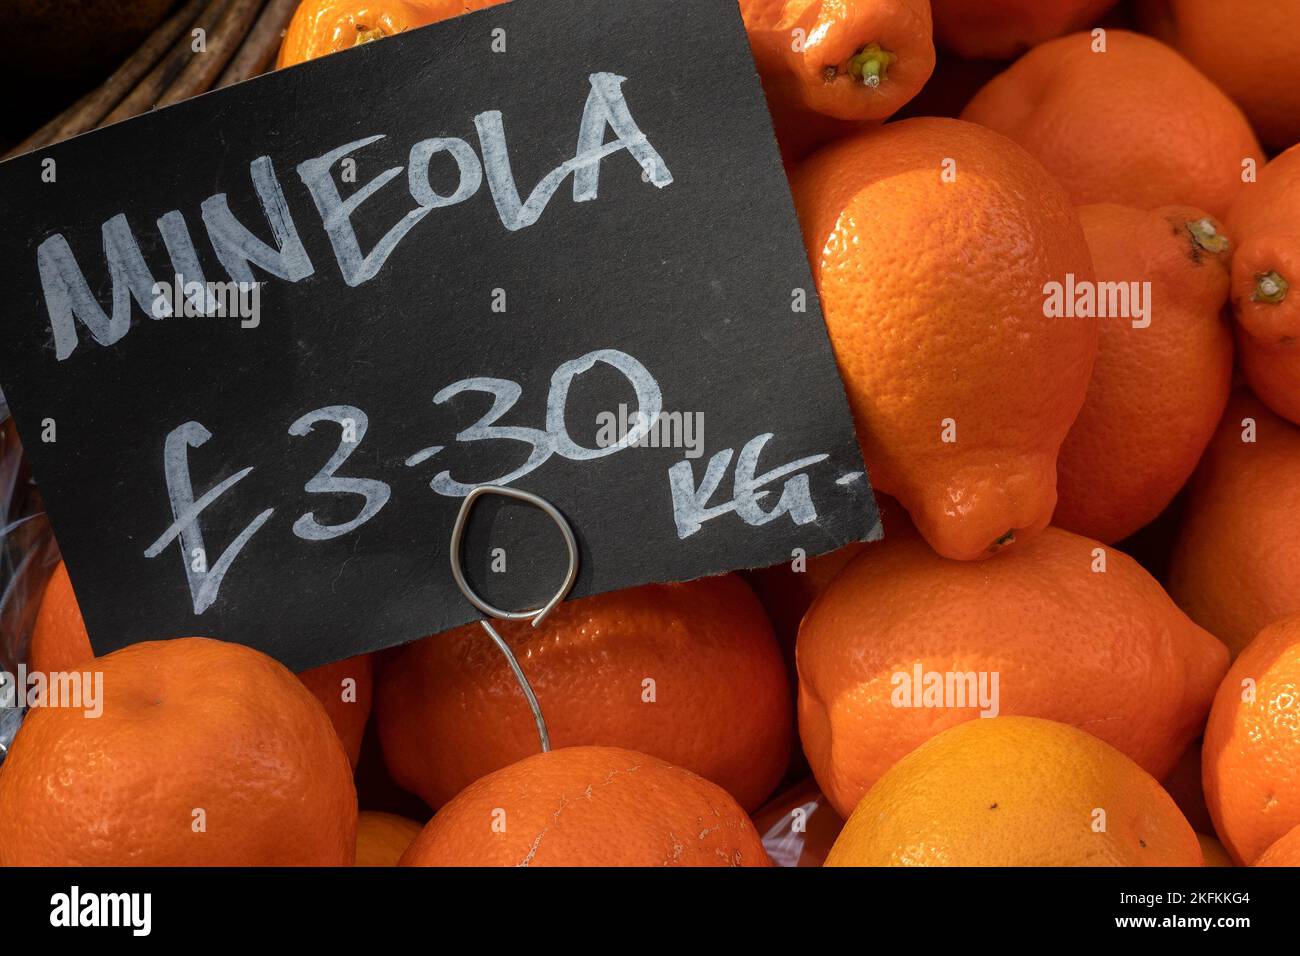 LONDRA, Regno Unito - 29 OTTOBRE 2022: Fesh Minneola Tangelo agrumi su uno stalla verde in un mercato alimentare con etichetta di prezzo Foto Stock